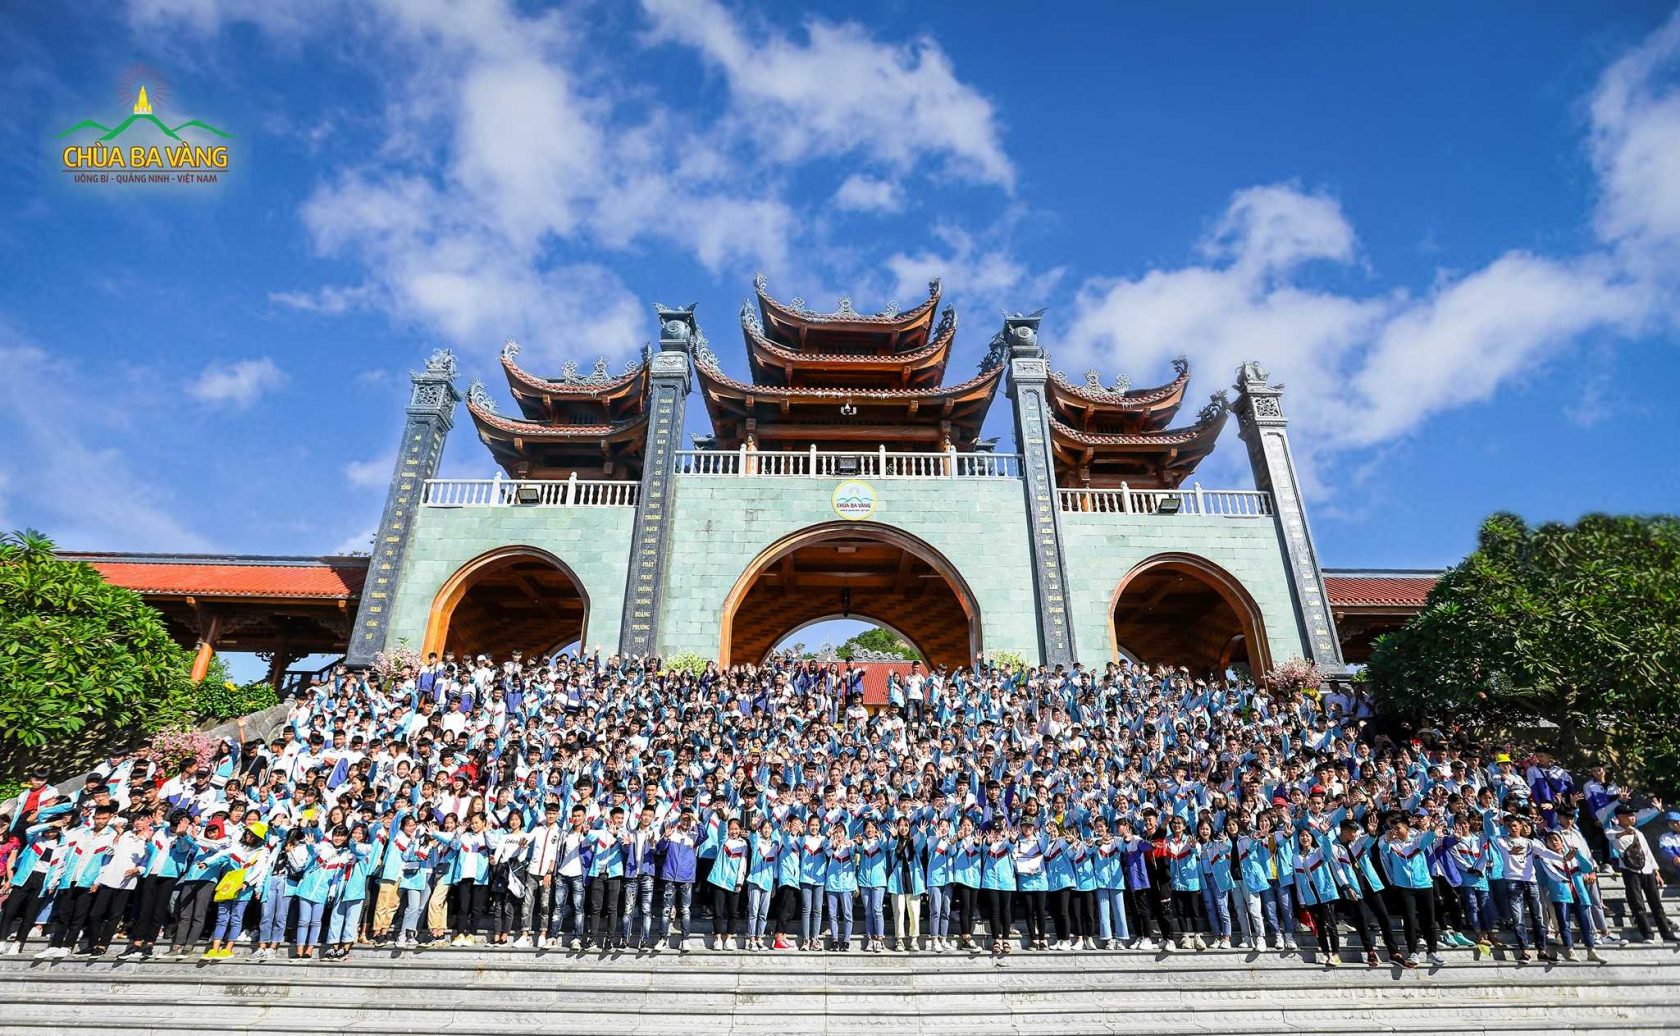 Hơn 800 học sinh của Trường THPT Lưu Nhân Chú Thái Nguyên đã có buổi sinh hoạt ý nghĩa tại chùa 